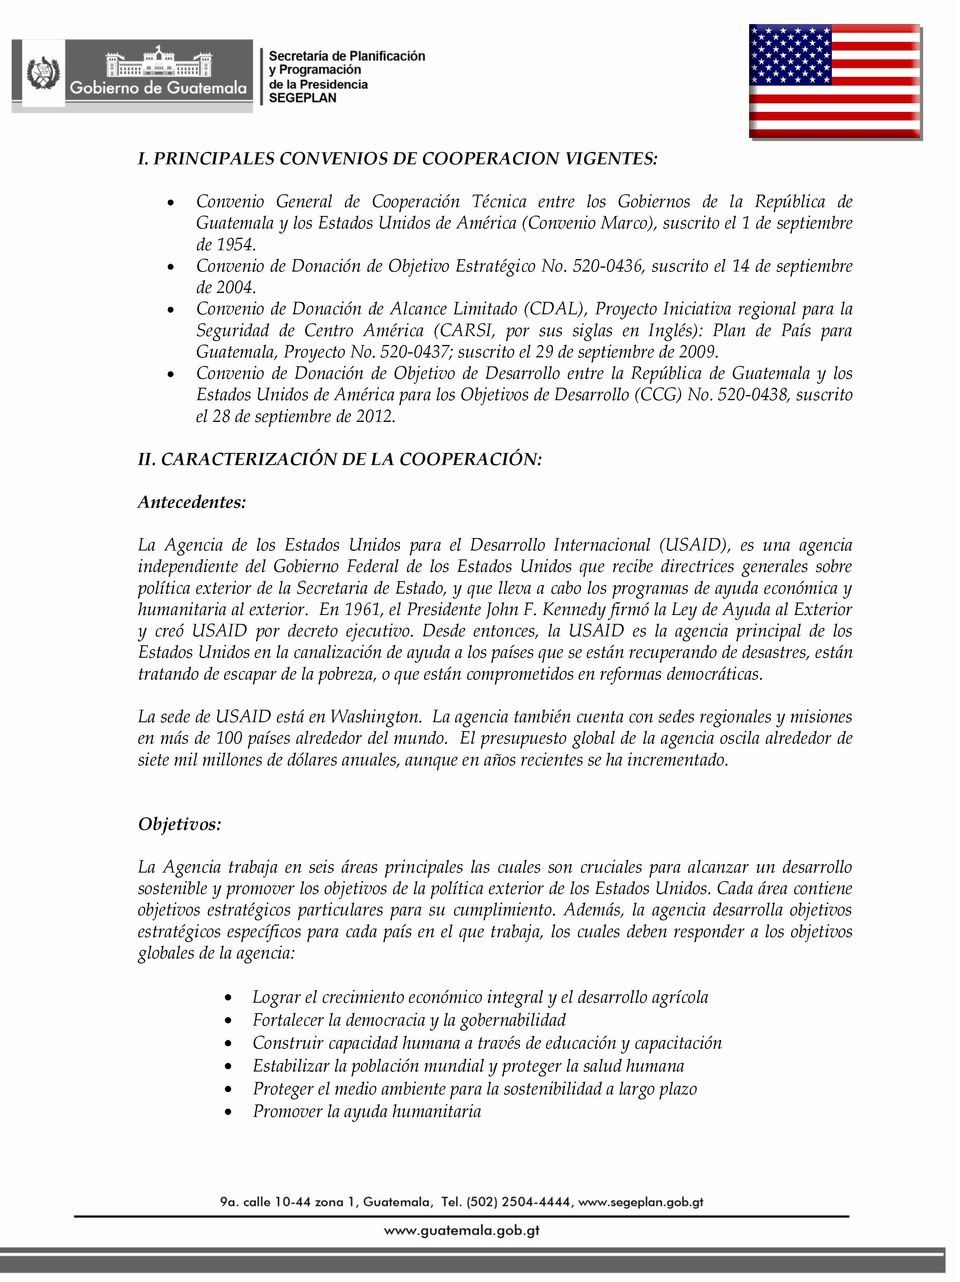 Convenio de Donación de Alcance Limitado (CDAL), Proyecto Iniciativa regional para la Seguridad de Centro América (CARSI, por sus siglas en Inglés): Plan de País para Guatemala, Proyecto No.